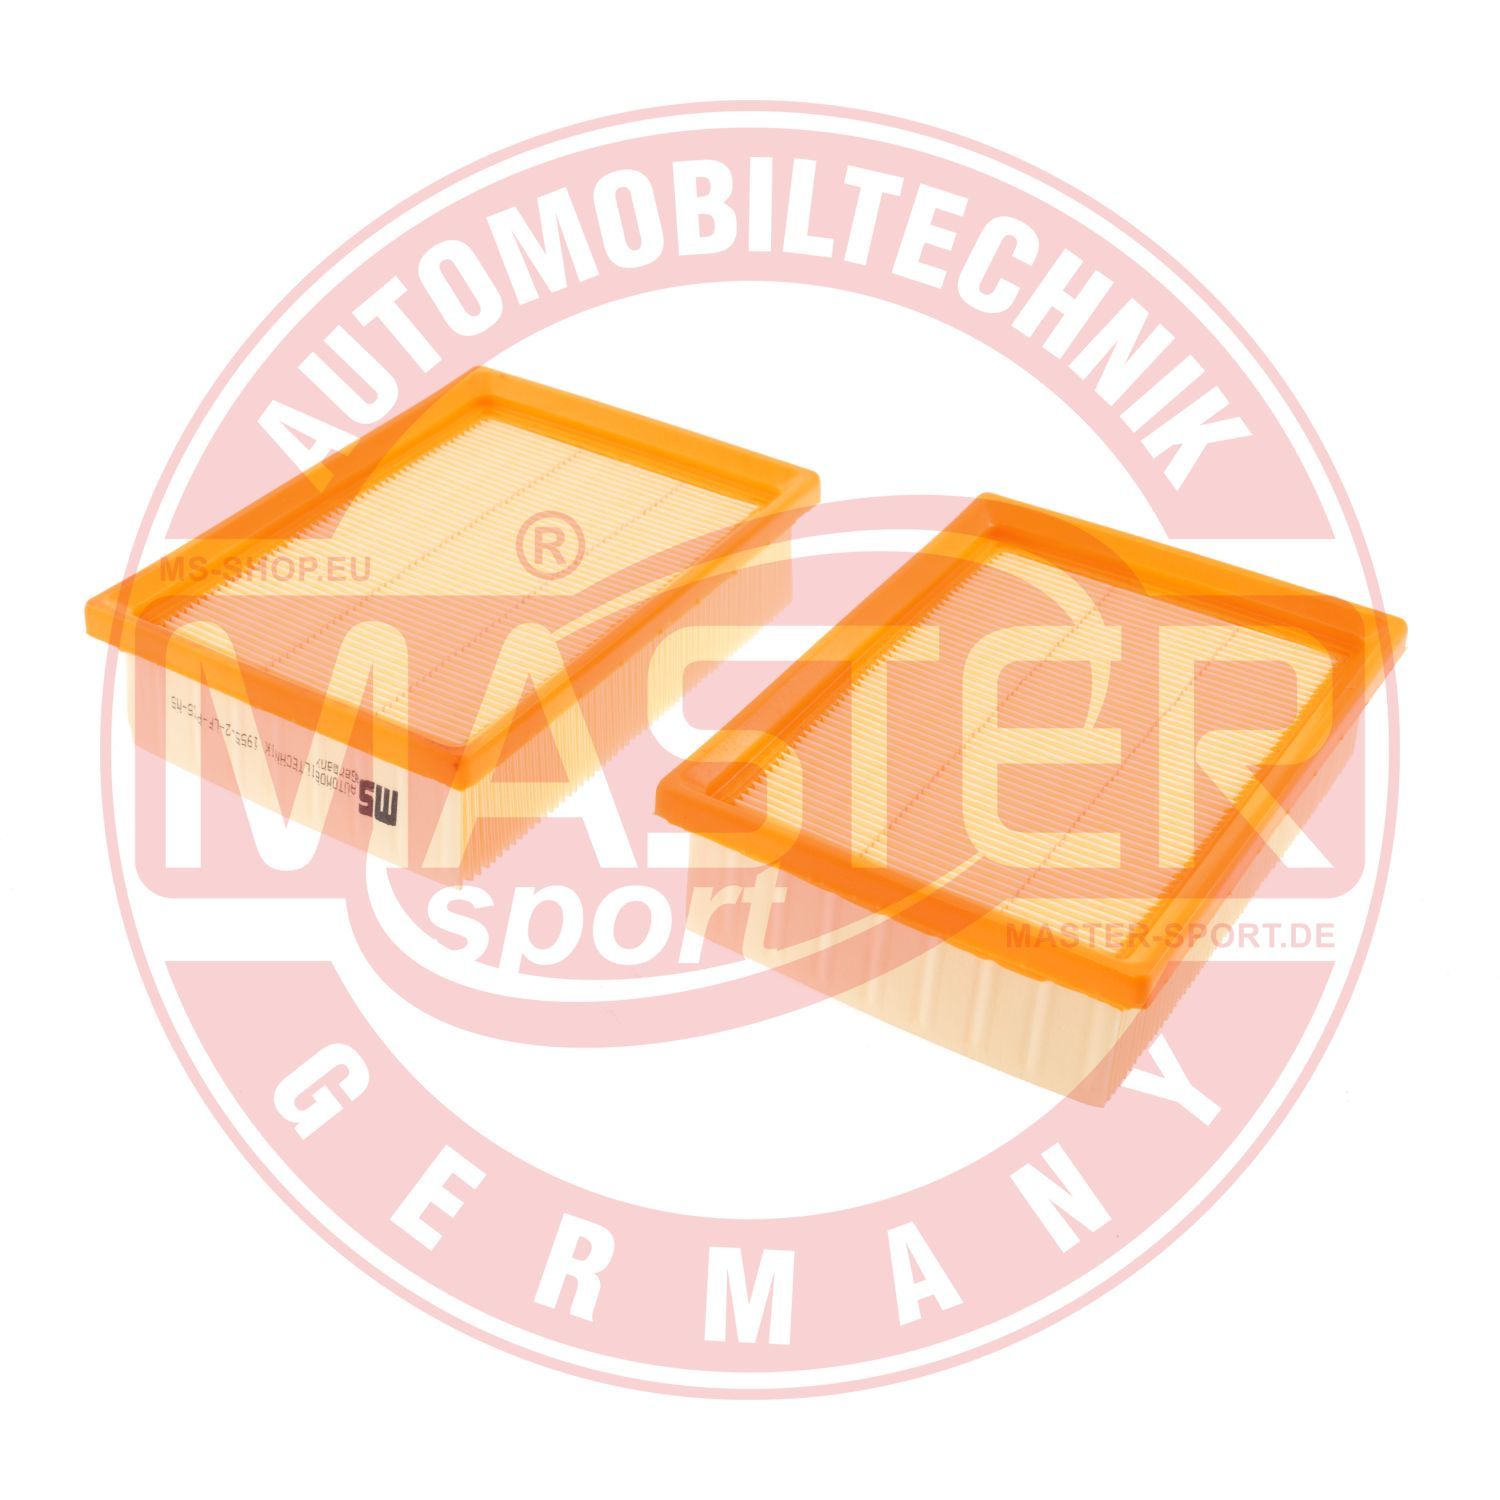 Vzduchový filter MASTER-SPORT GERMANY